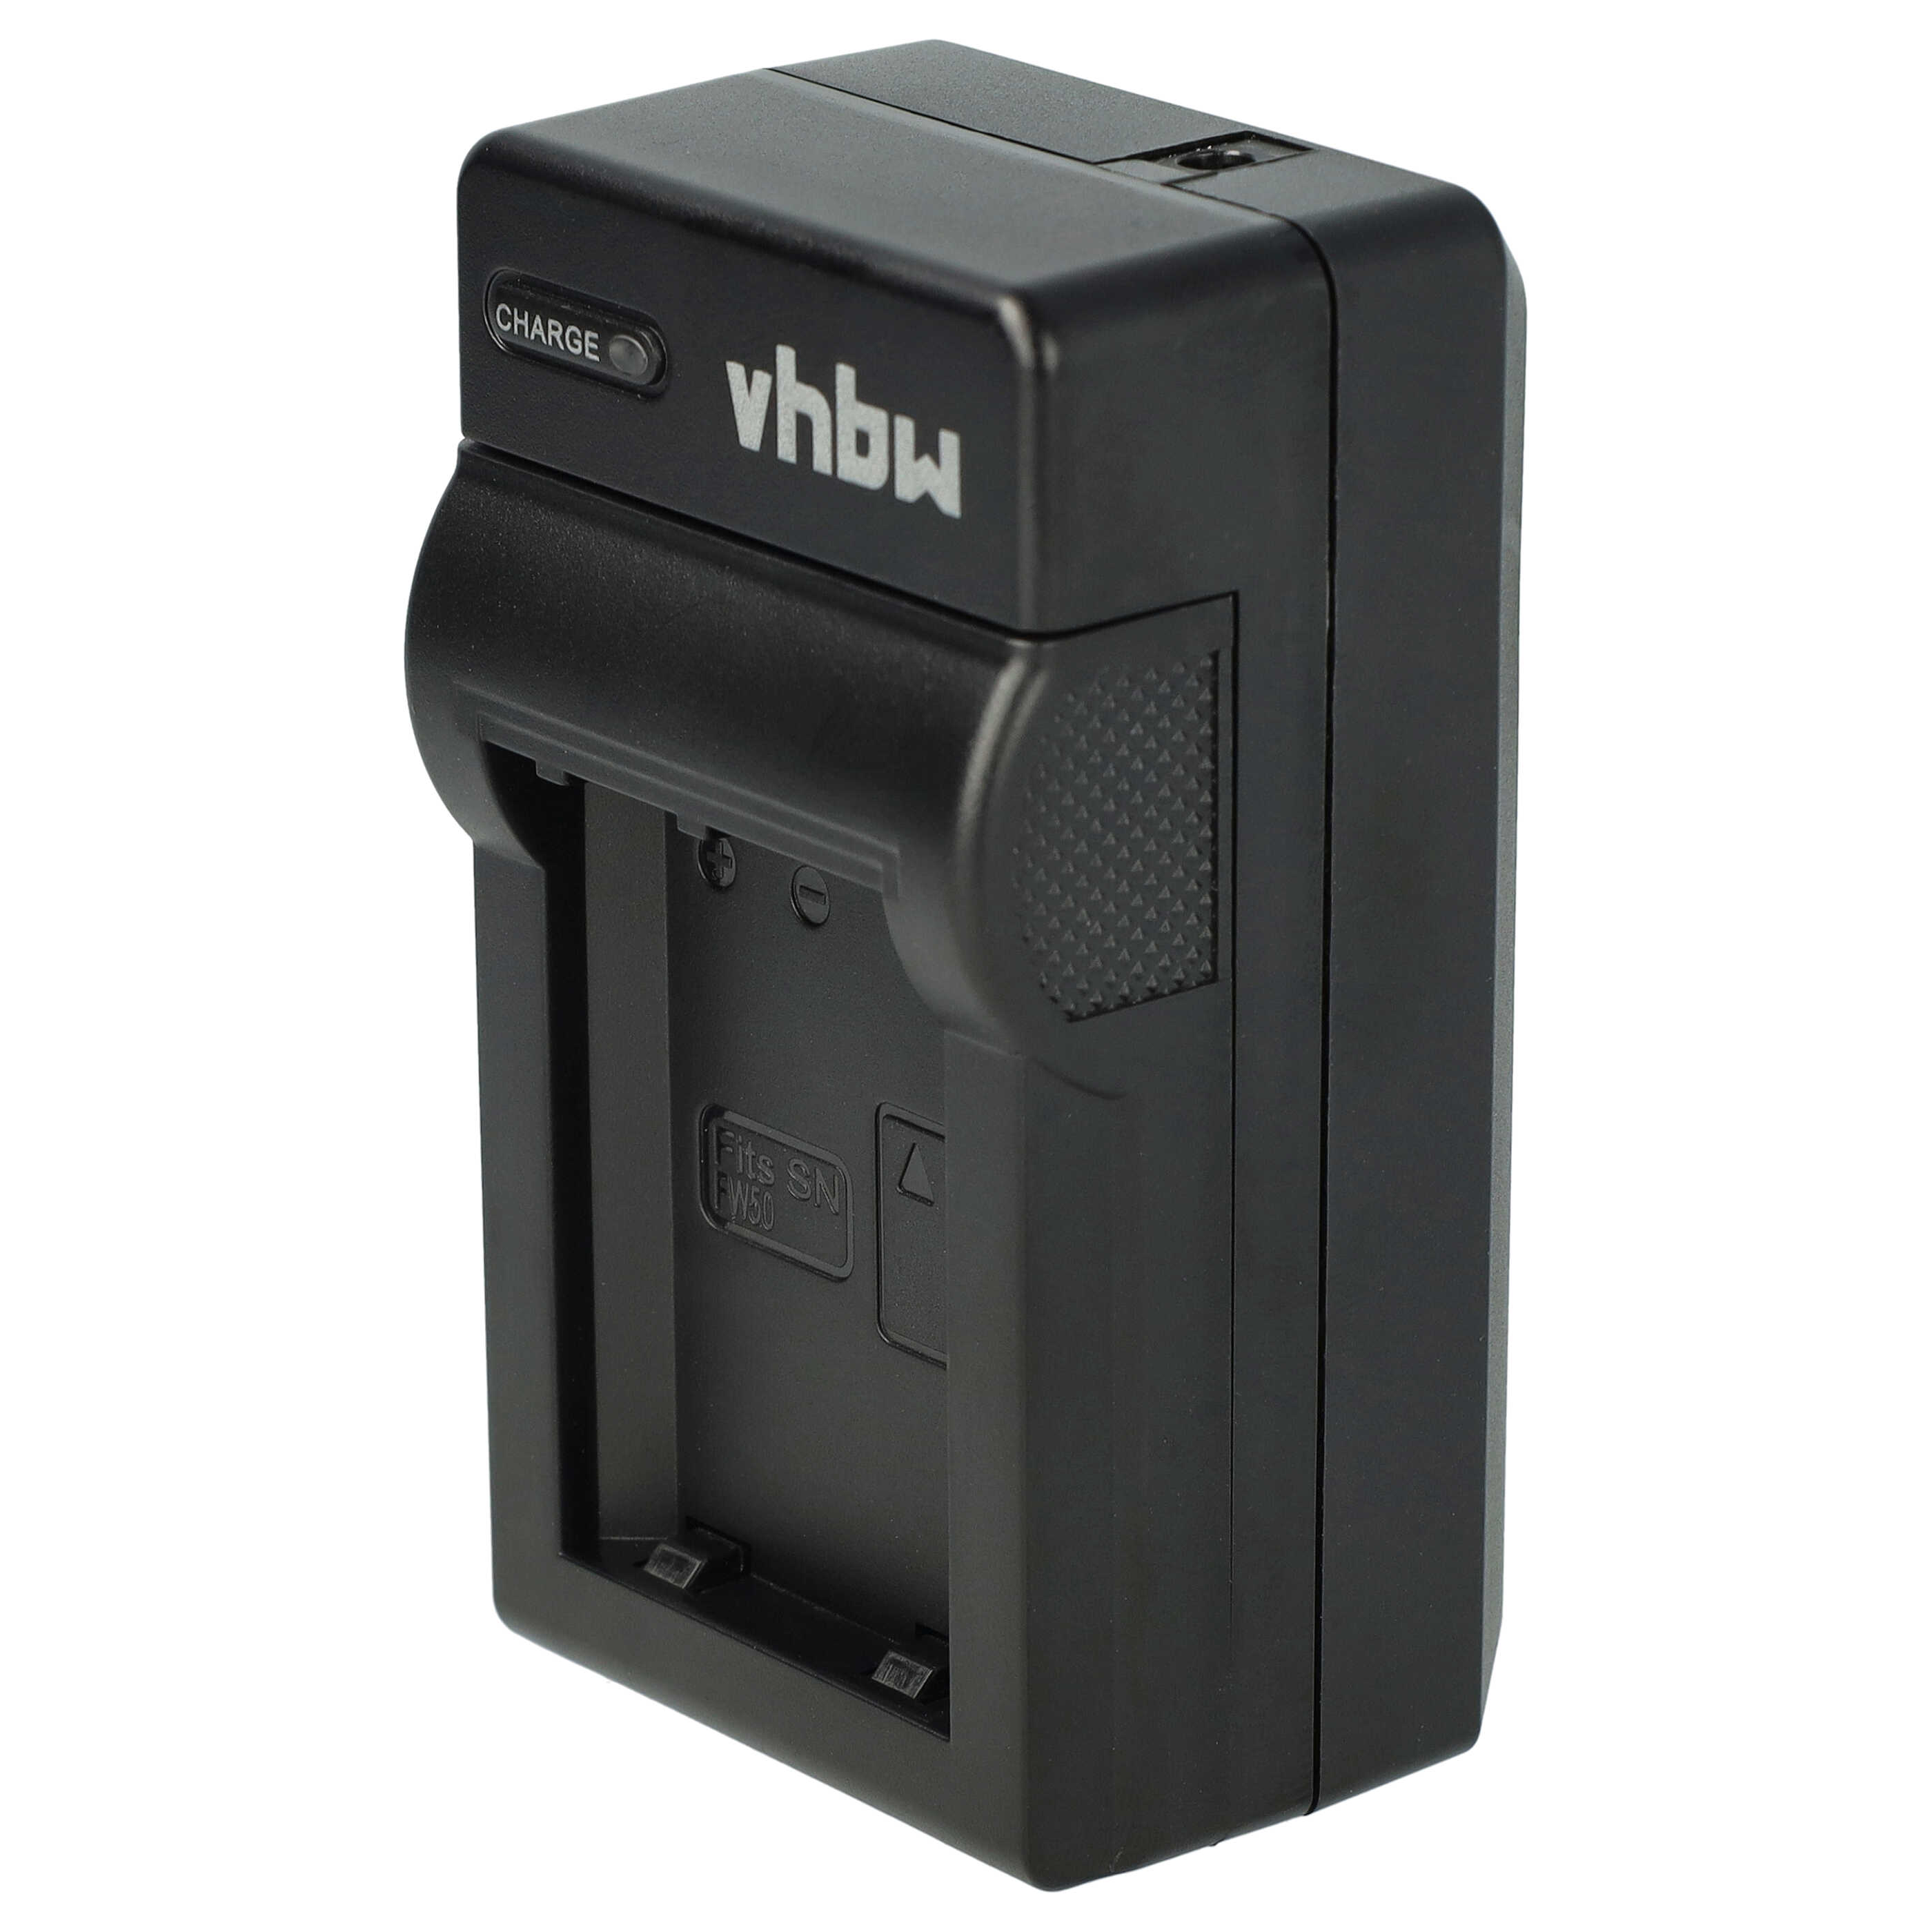 Akku Ladegerät passend für Sony NP-FW50 Kamera u.a. - 0,6 A, 8,4 V